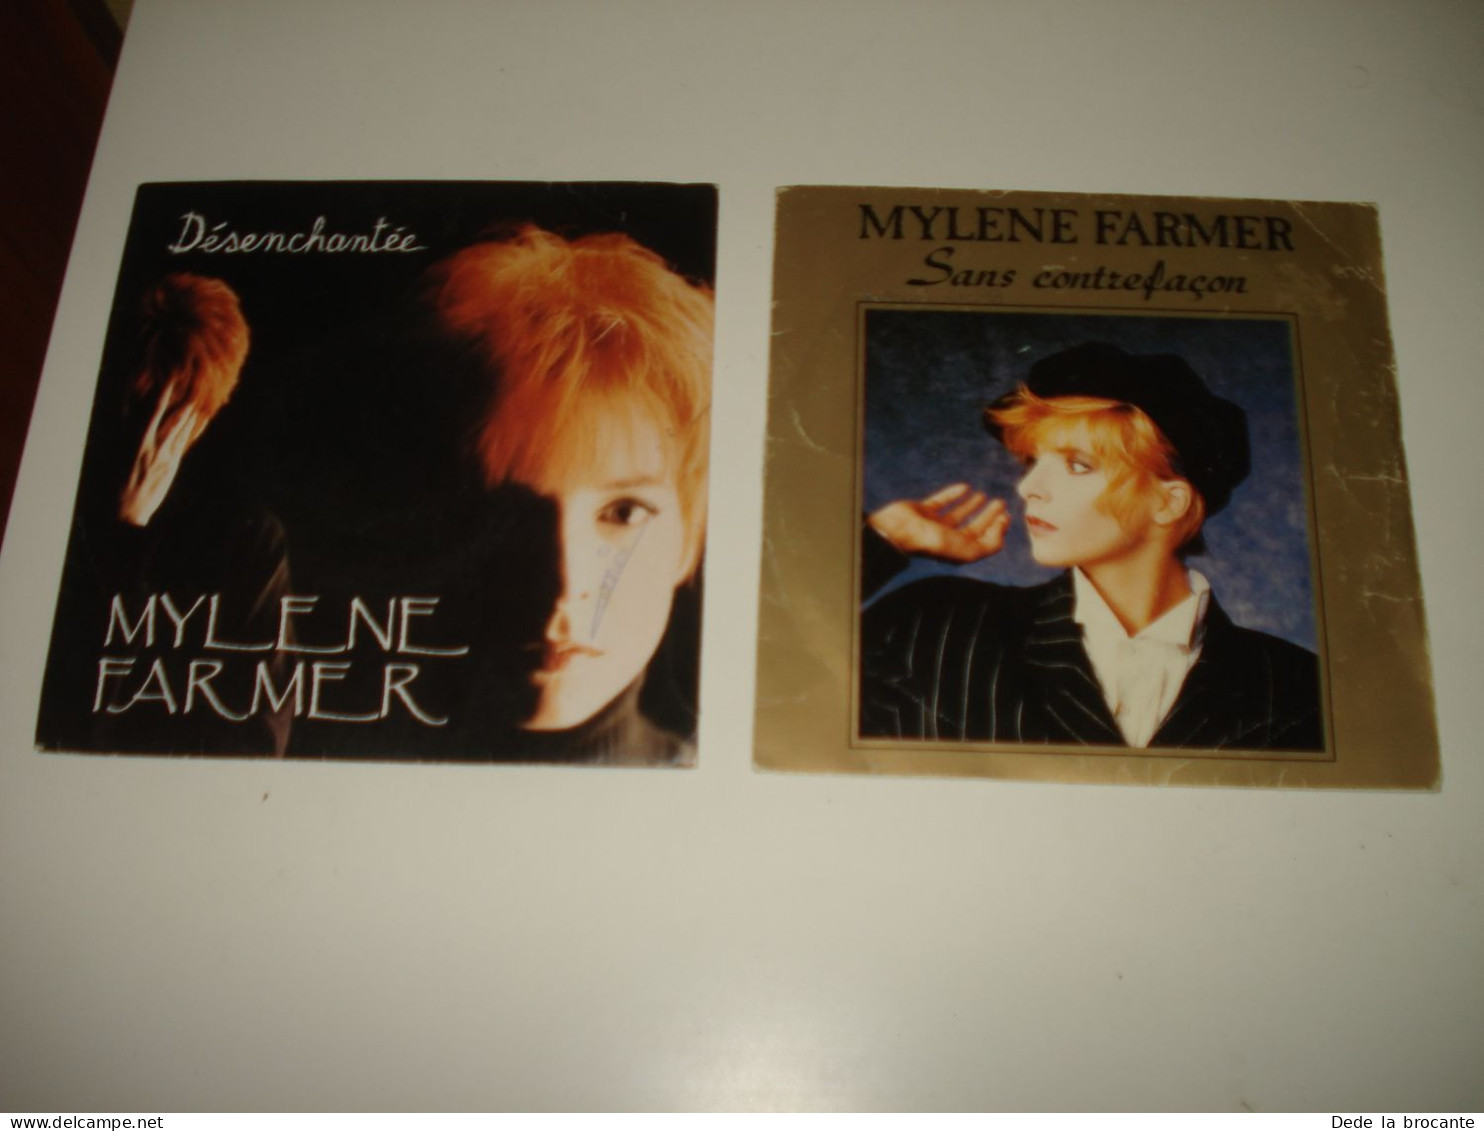 B14/  Lot De 2 SP  -  Mylene Farmer  - Sans Contre Façon + Désenchantée VG++/EX - Disco, Pop